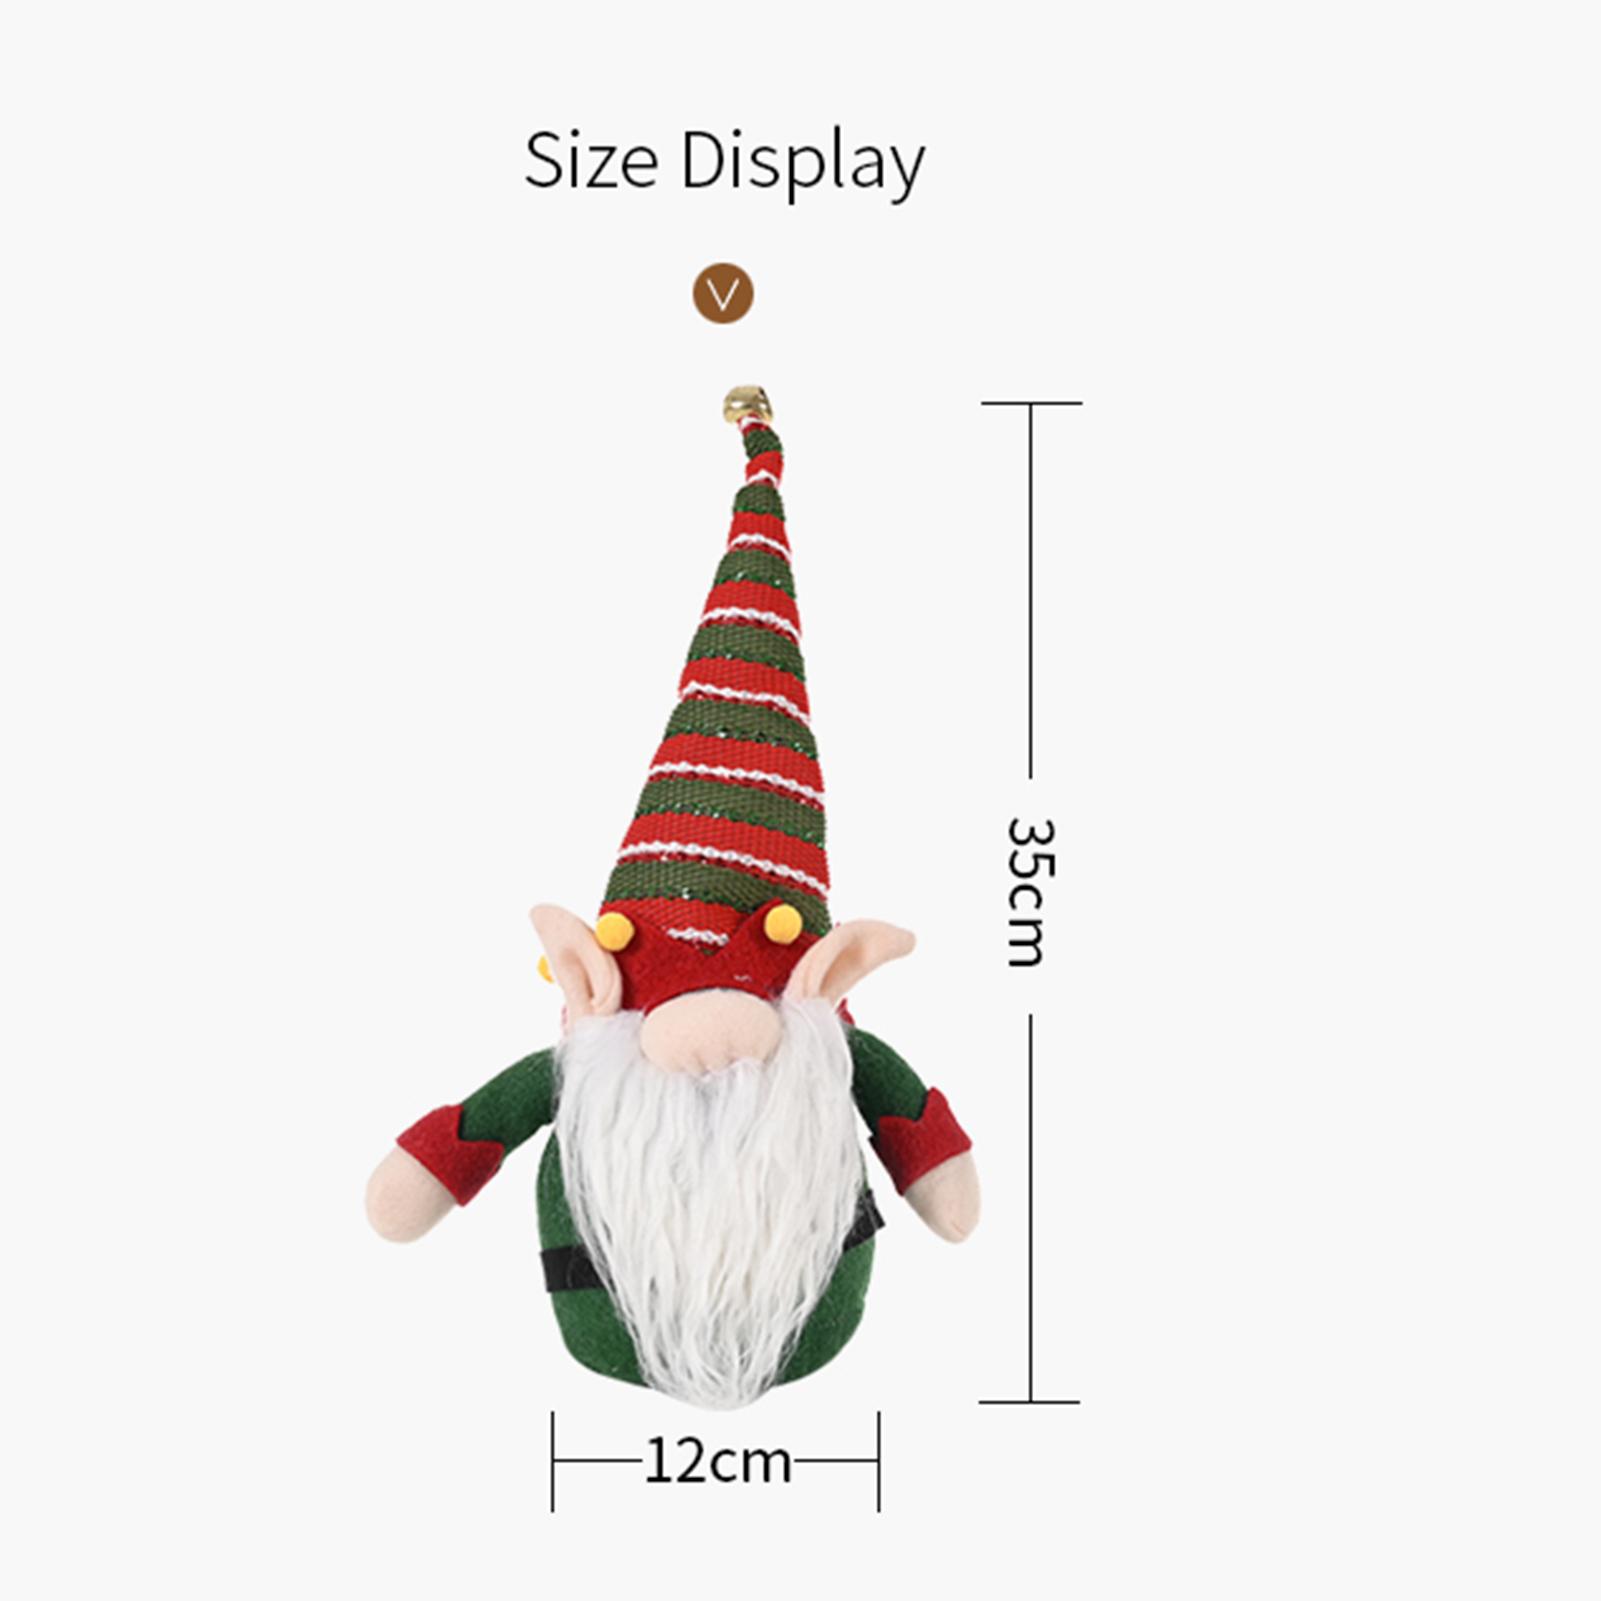 đồ trang trí bàn Giáng sinh thiết kế hình ông già không mặt dễ thương, bằng vải trọng lượng nhẹ, nhỏ gọn